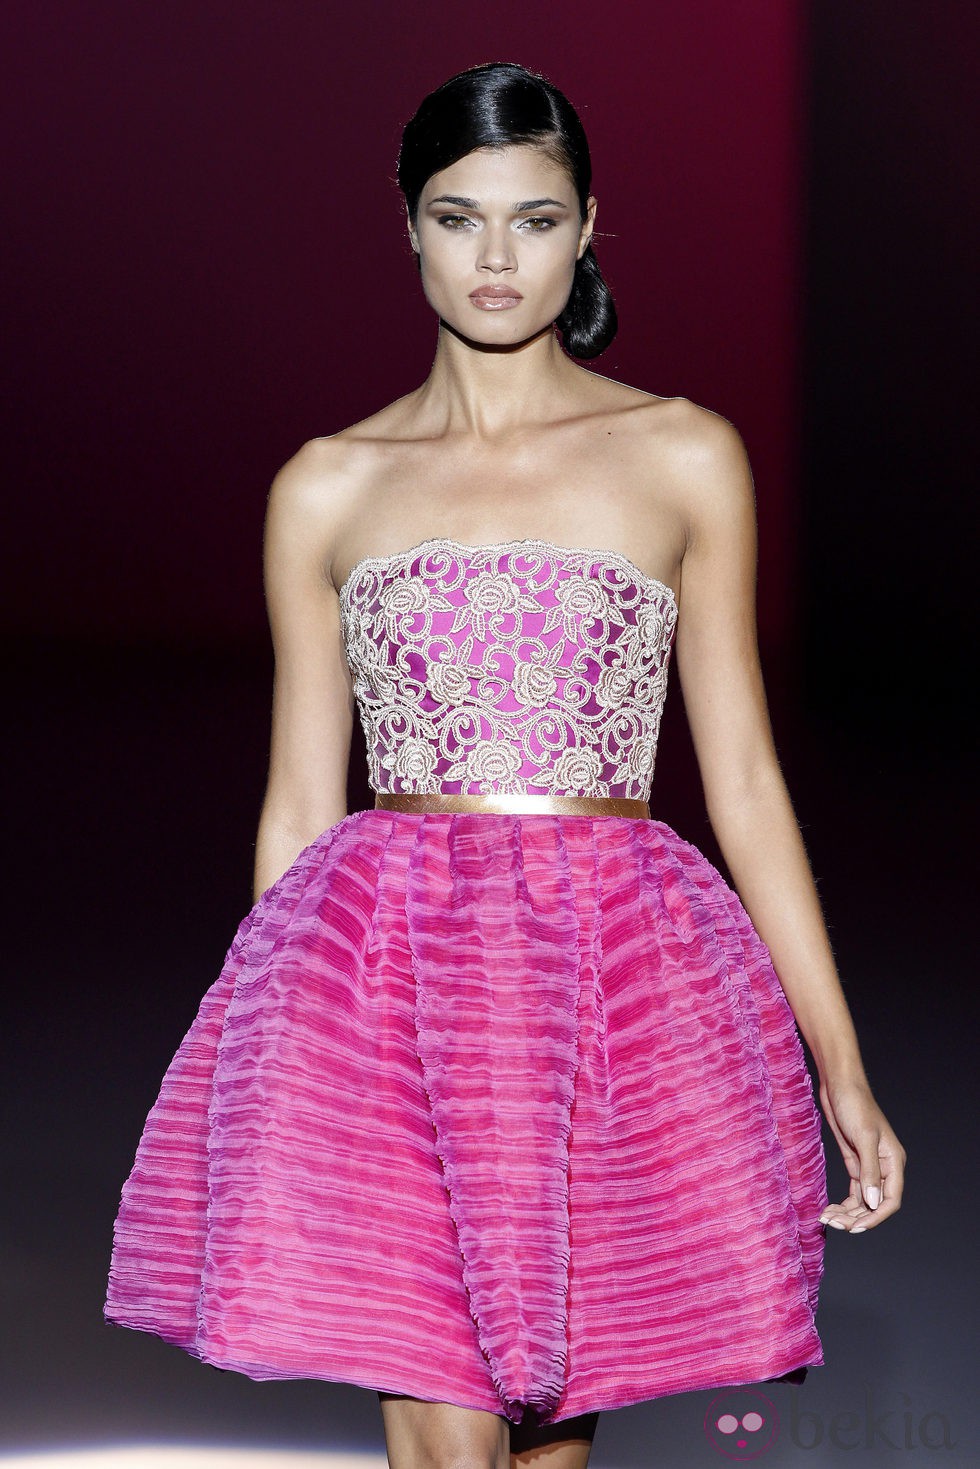 Vestido fucsia de la colección primavera/verano 2014 de Hannibal Laguna en Madrid Fashion Week